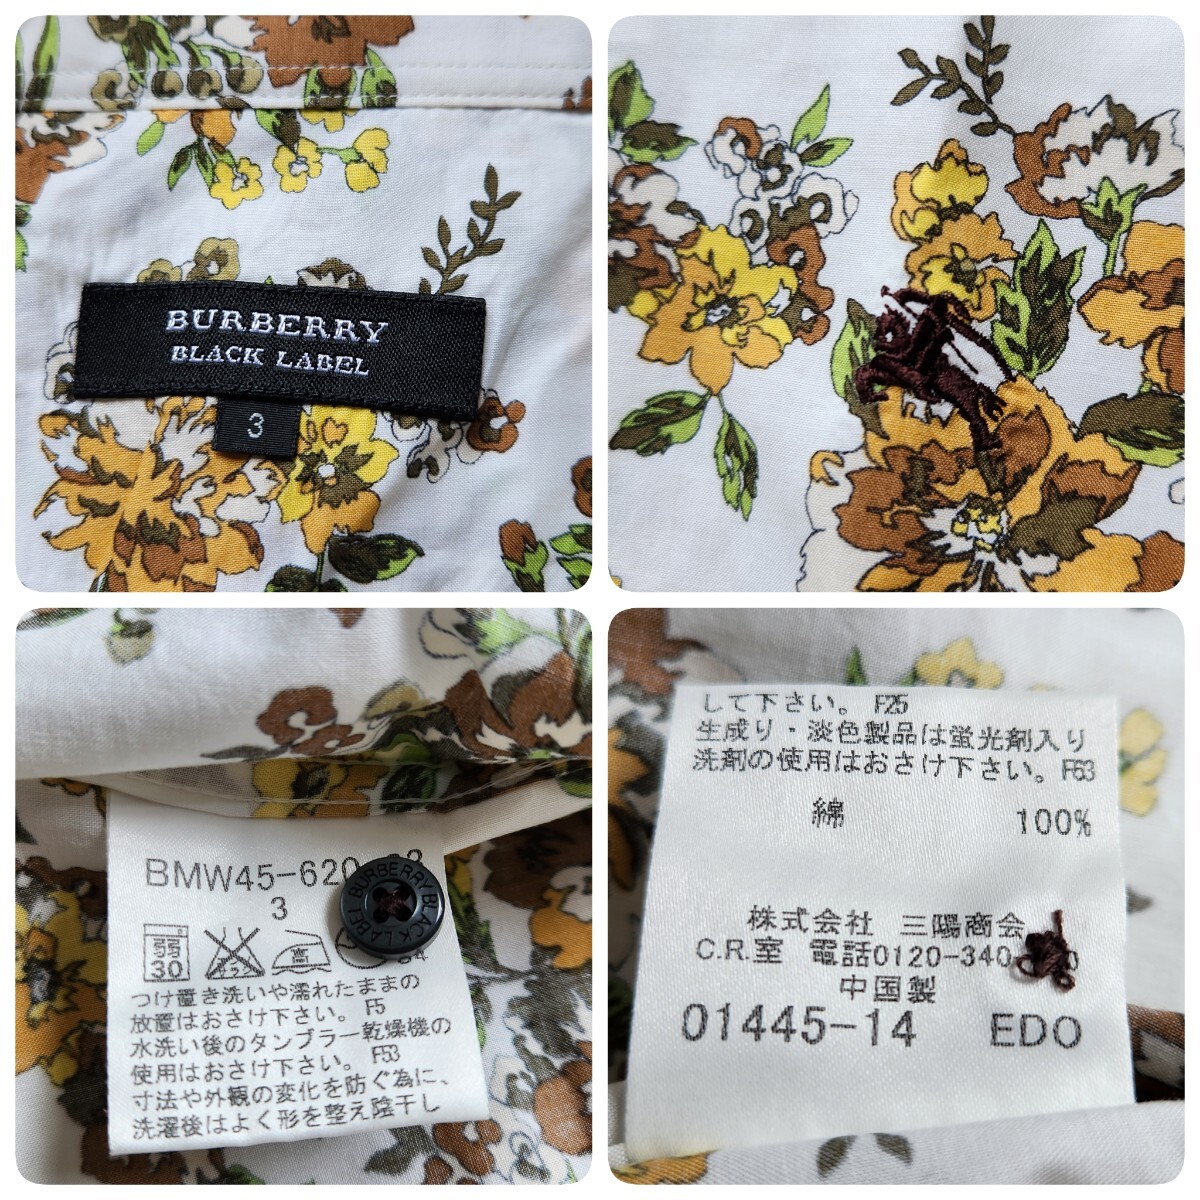  превосходный товар редкий XL соответствует BURBERRY BLACK LABEL Burberry Black Label рубашка с коротким рукавом общий рисунок цветочный принт шланг Logo вышивка botanikaru многоцветный 